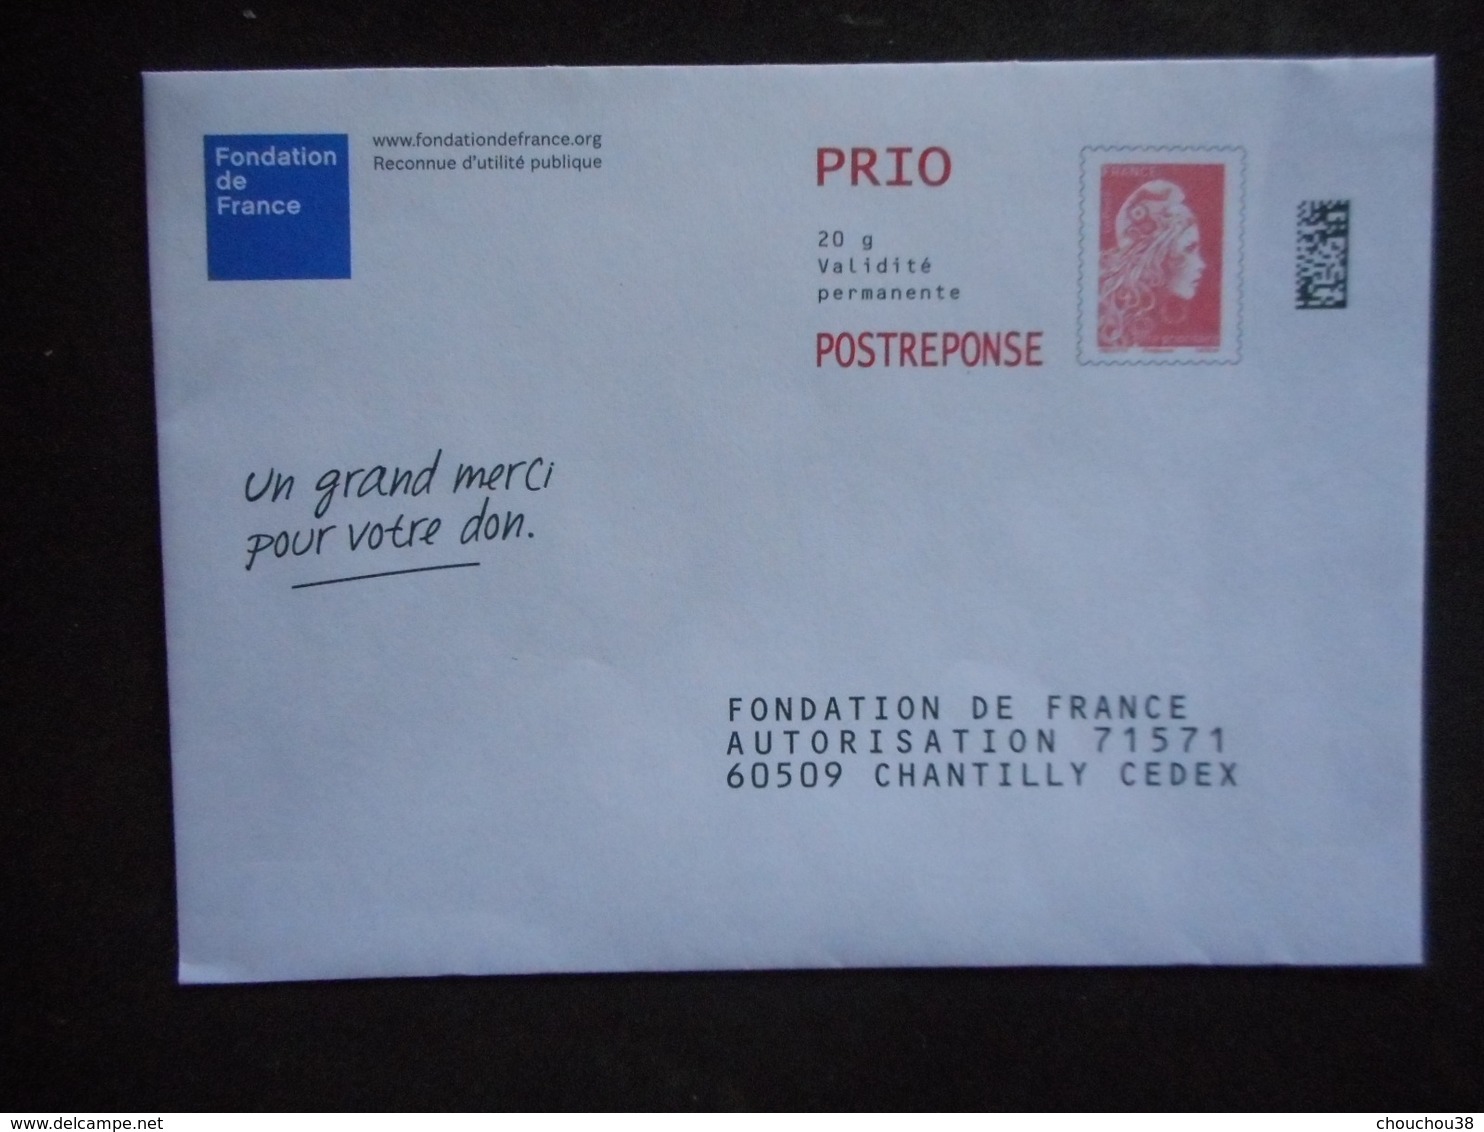 ENVELOPPE POSTREPONSE Prio "FONDATION DE FRANCEI" - Prêts-à-poster: Réponse